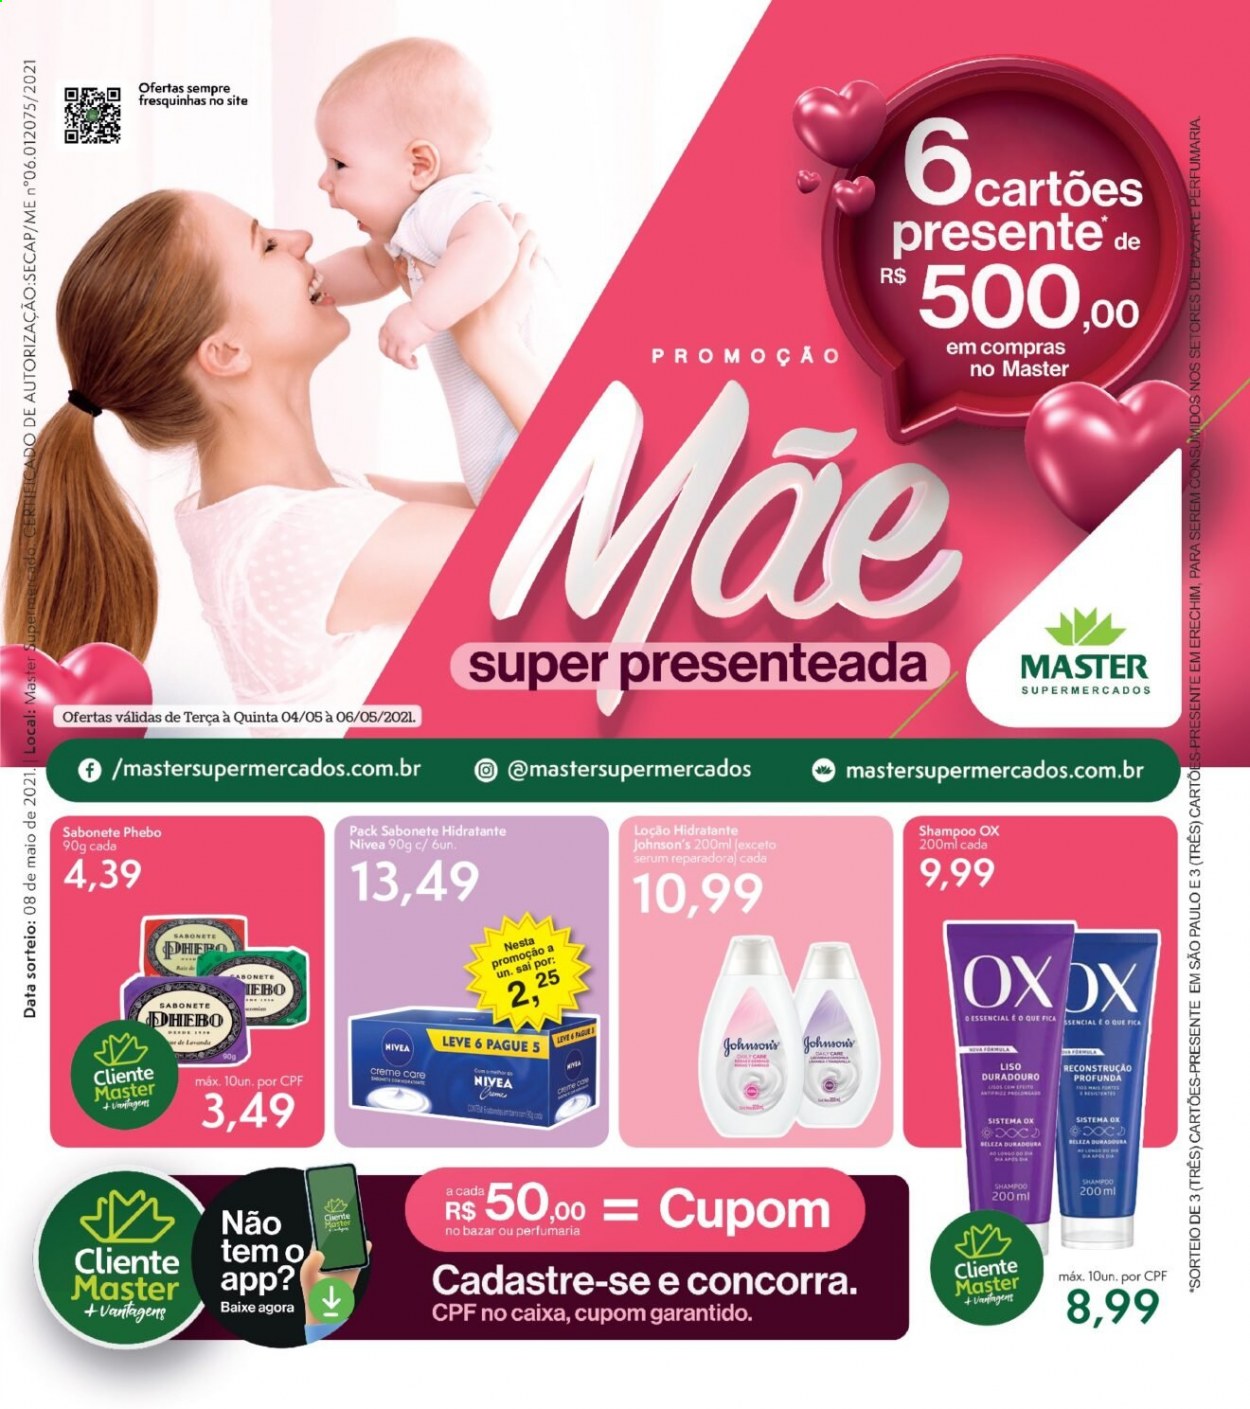 thumbnail - Folheto Master Supermercados - 04/05/2021 - 06/05/2021 - Produtos em promoção - sabonete, Johnson & Johnson, Nivea, shampoo, loção, sérum, loção hidratante. Página 1.